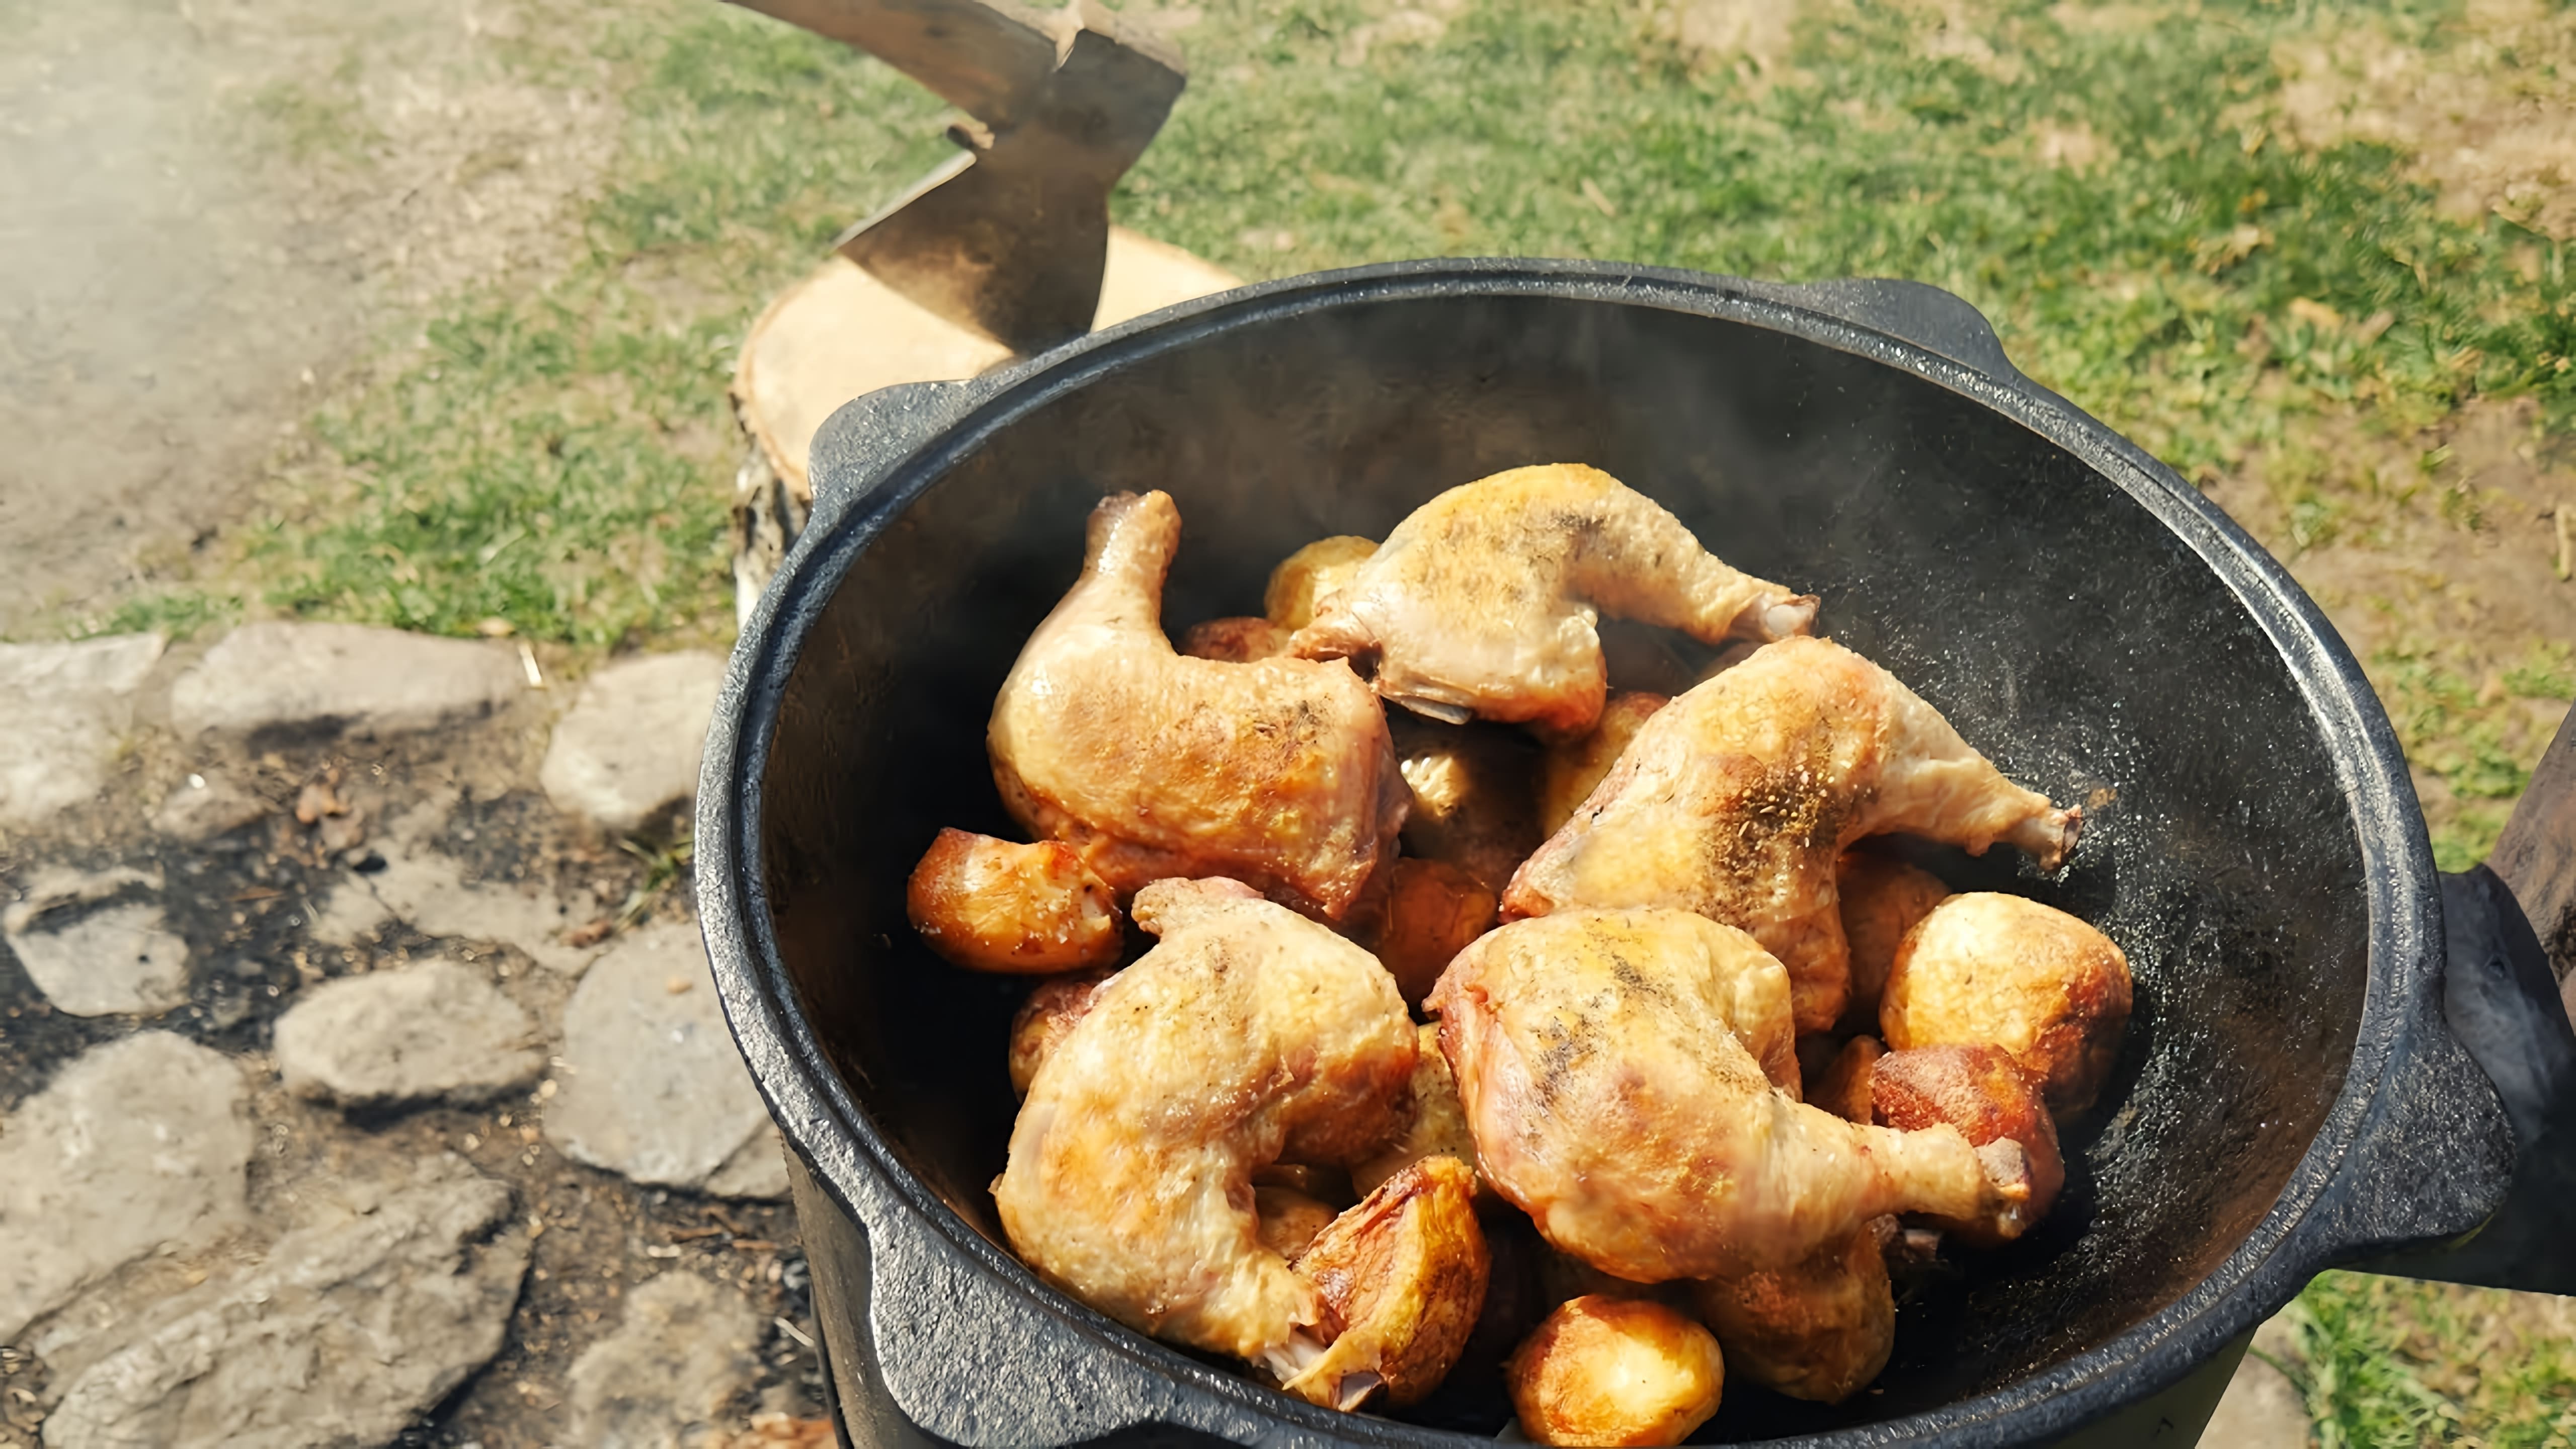 В этом видео демонстрируется рецепт приготовления казан-кaбаба с курицей на костре